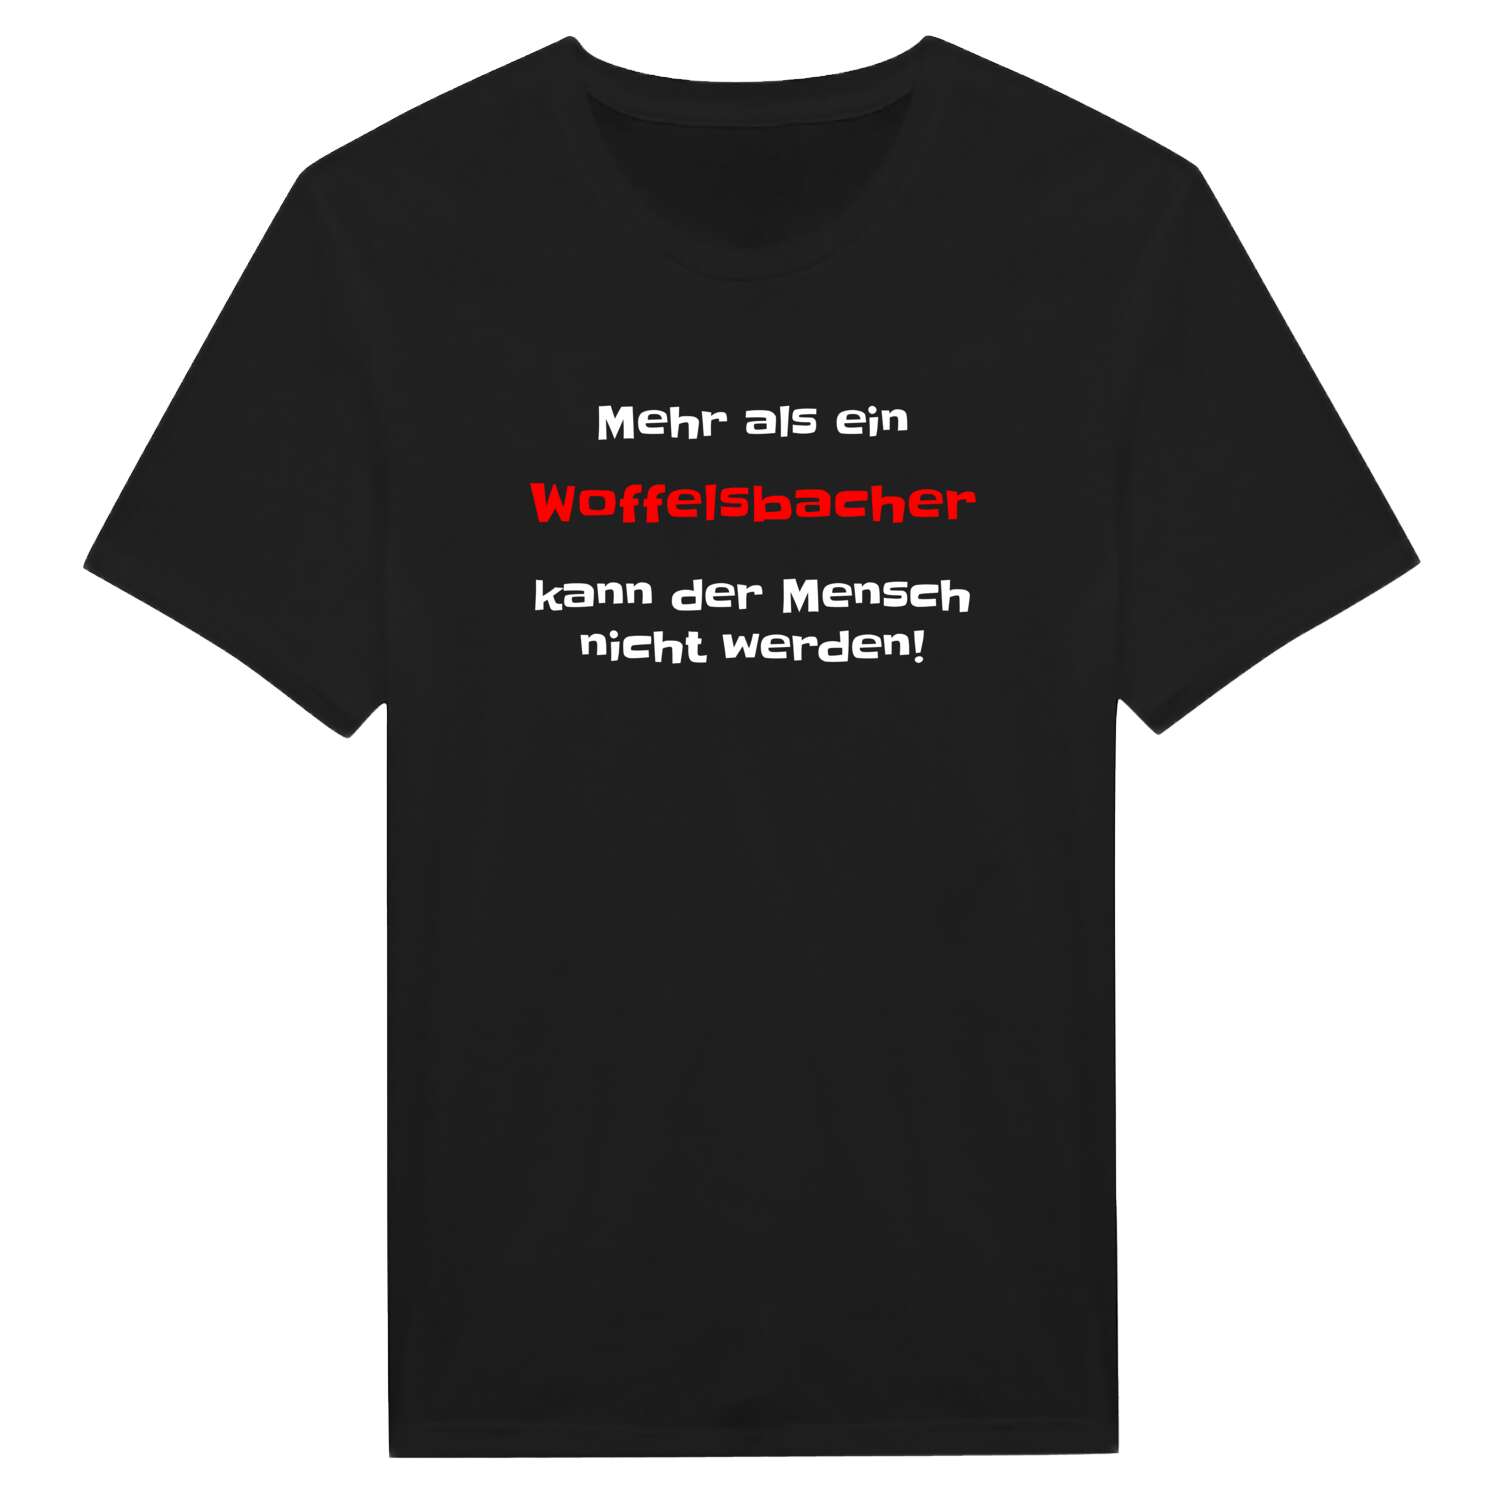 Woffelsbach T-Shirt »Mehr als ein«